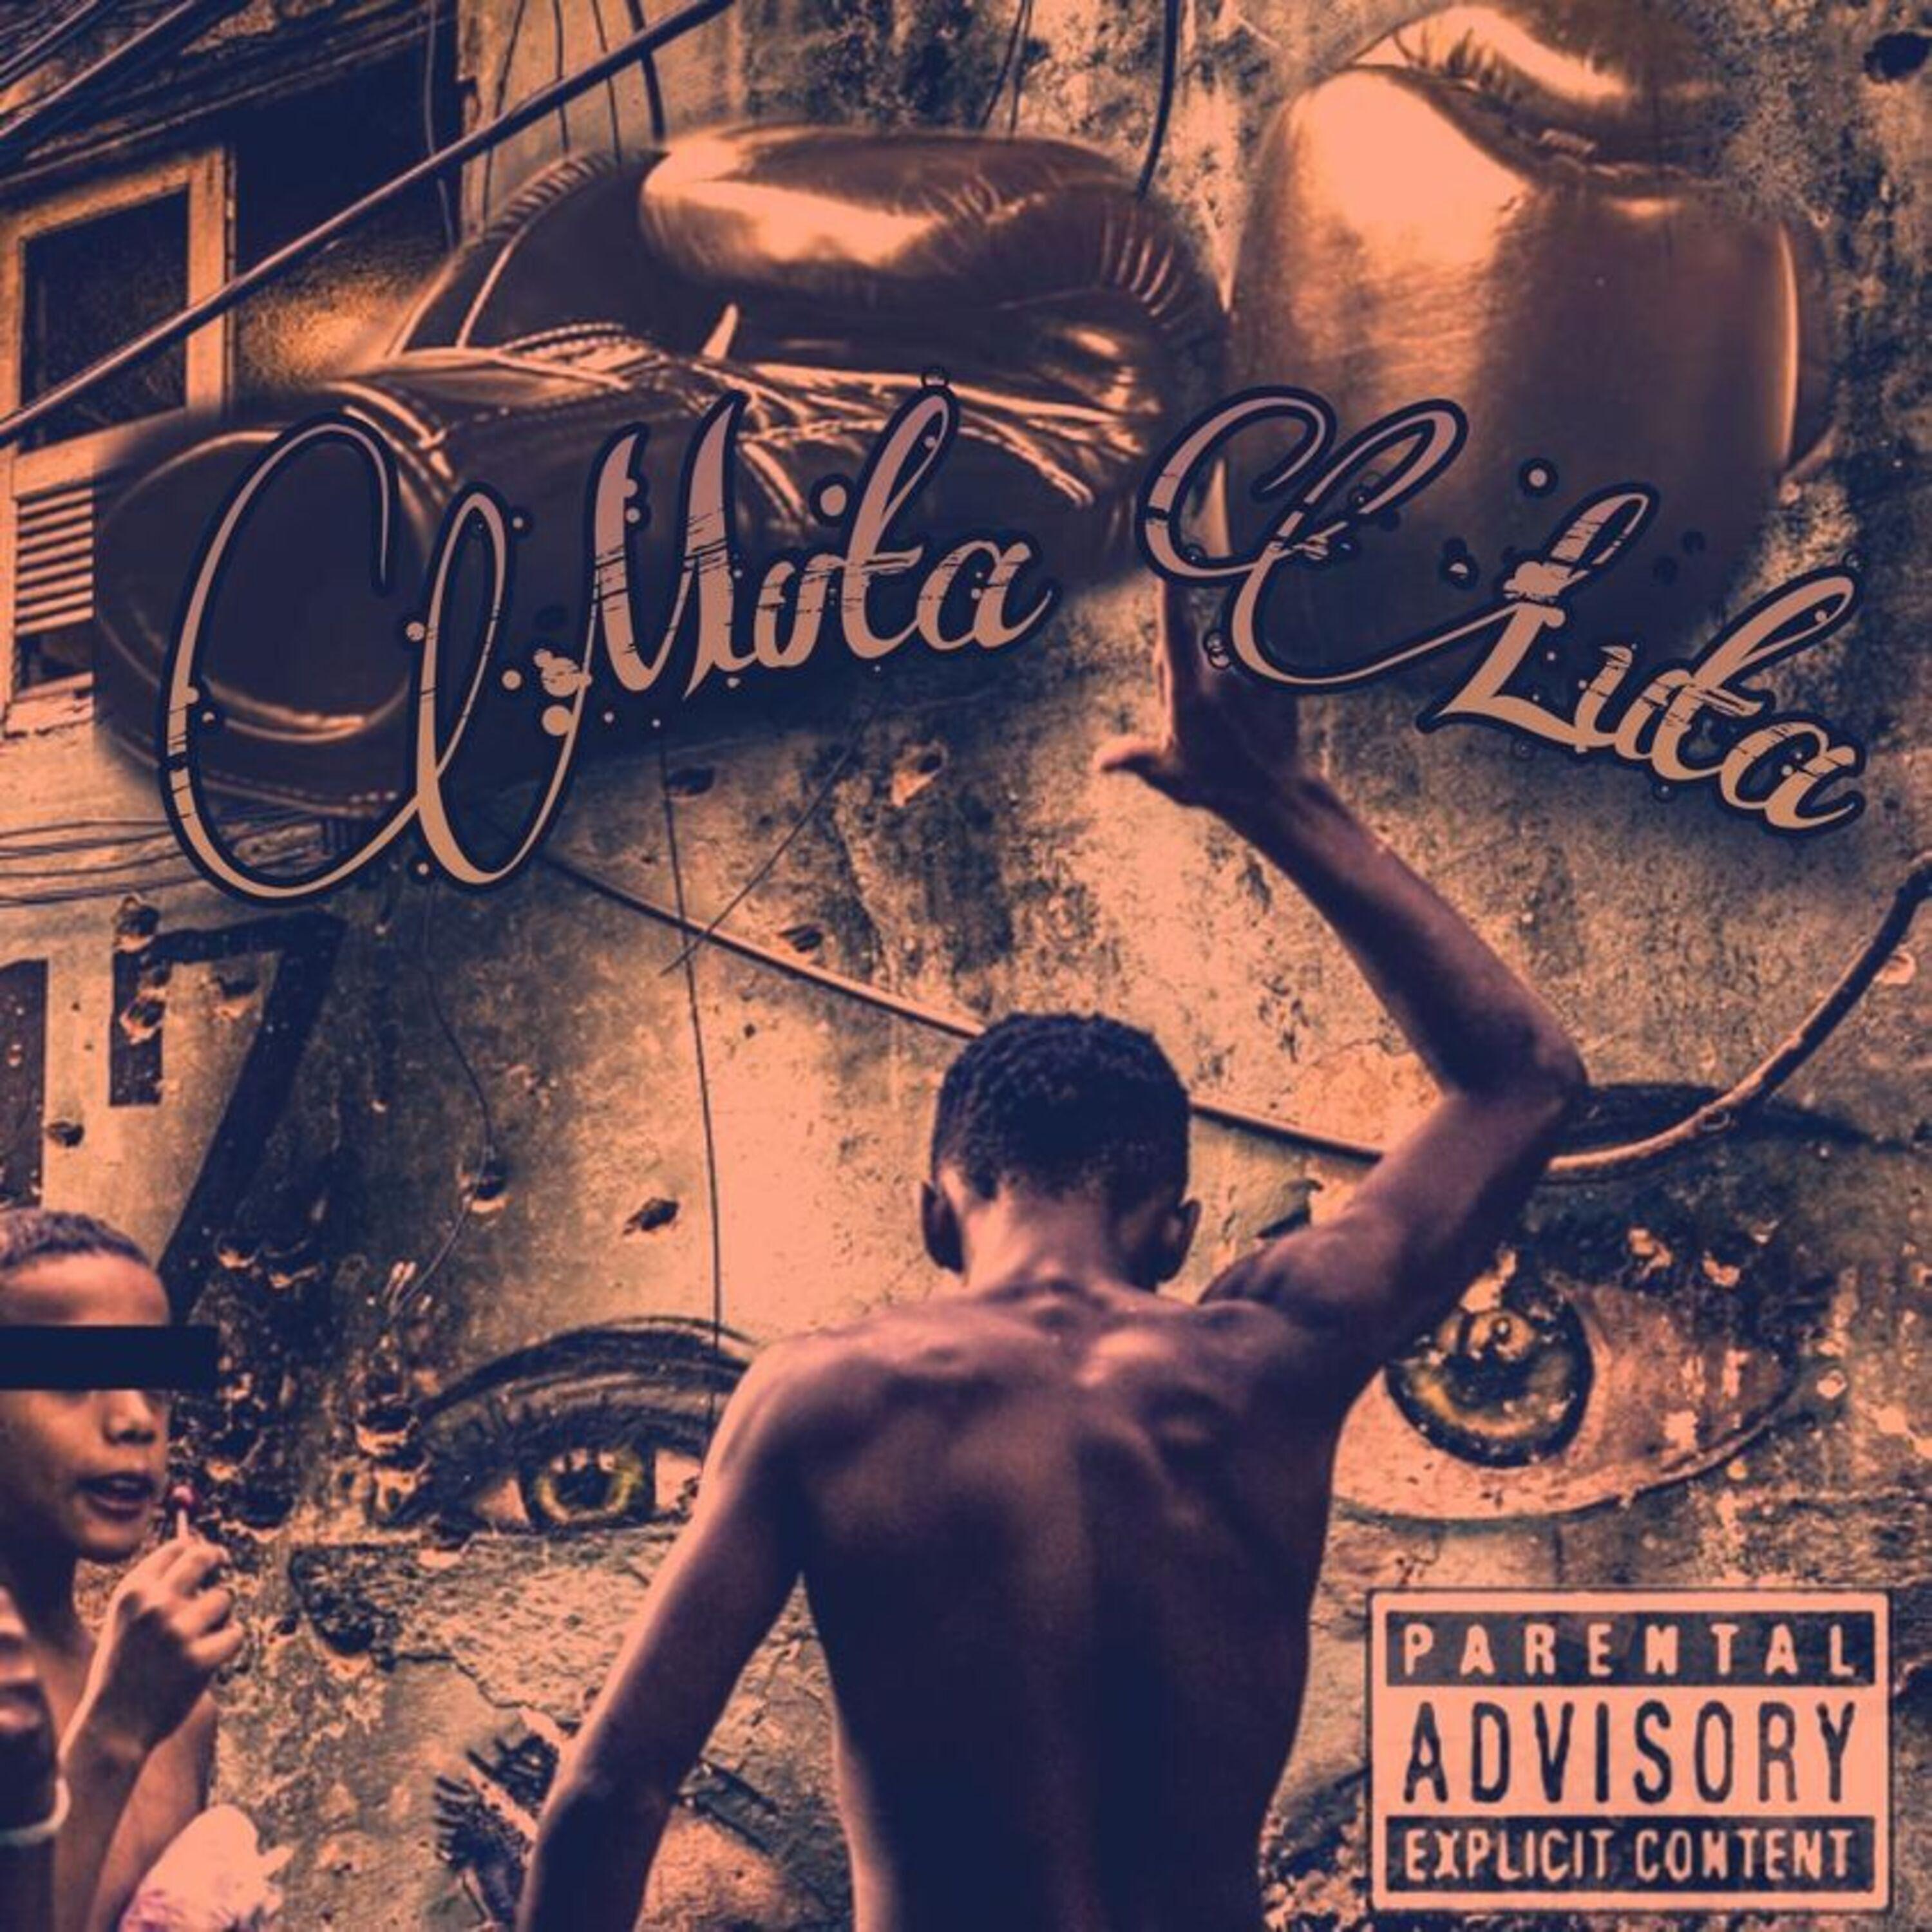 Постер альбома Muita Luta